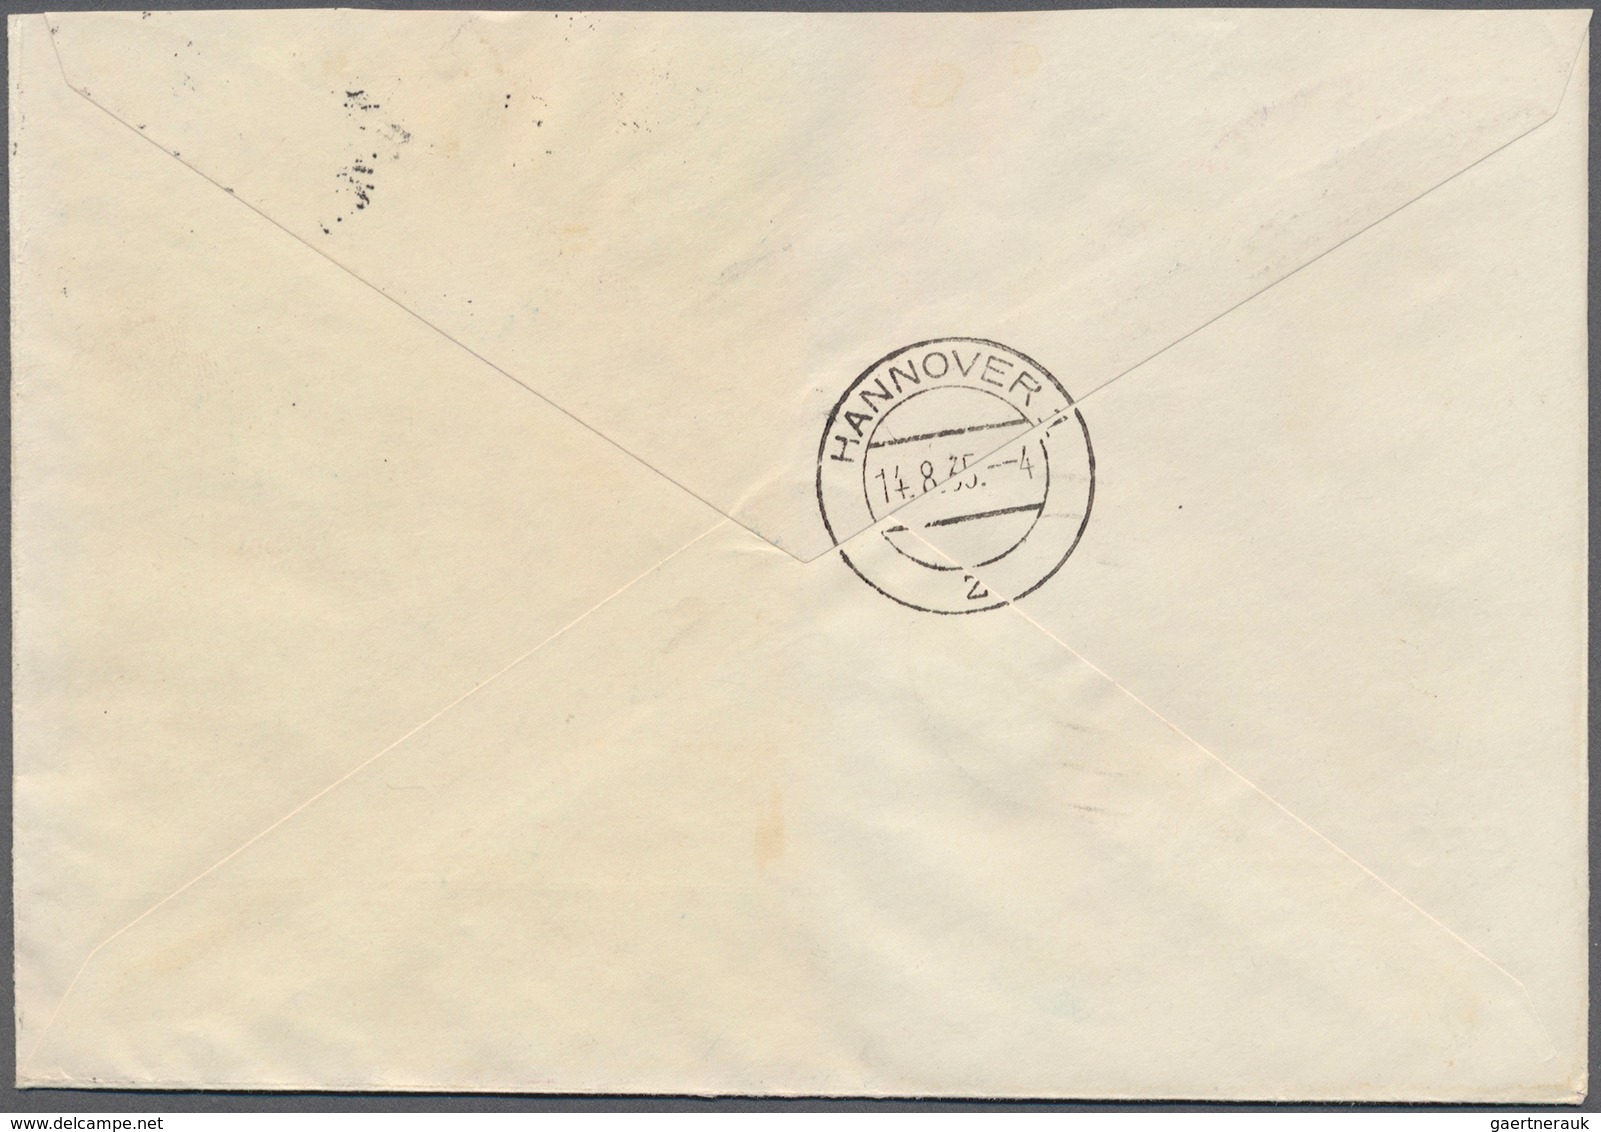 Deutsches Reich - Zusammendrucke: OSTROPA 1935, Block-Zusammendruck, Auf Portogerechtem R-Brief, Mit - Se-Tenant